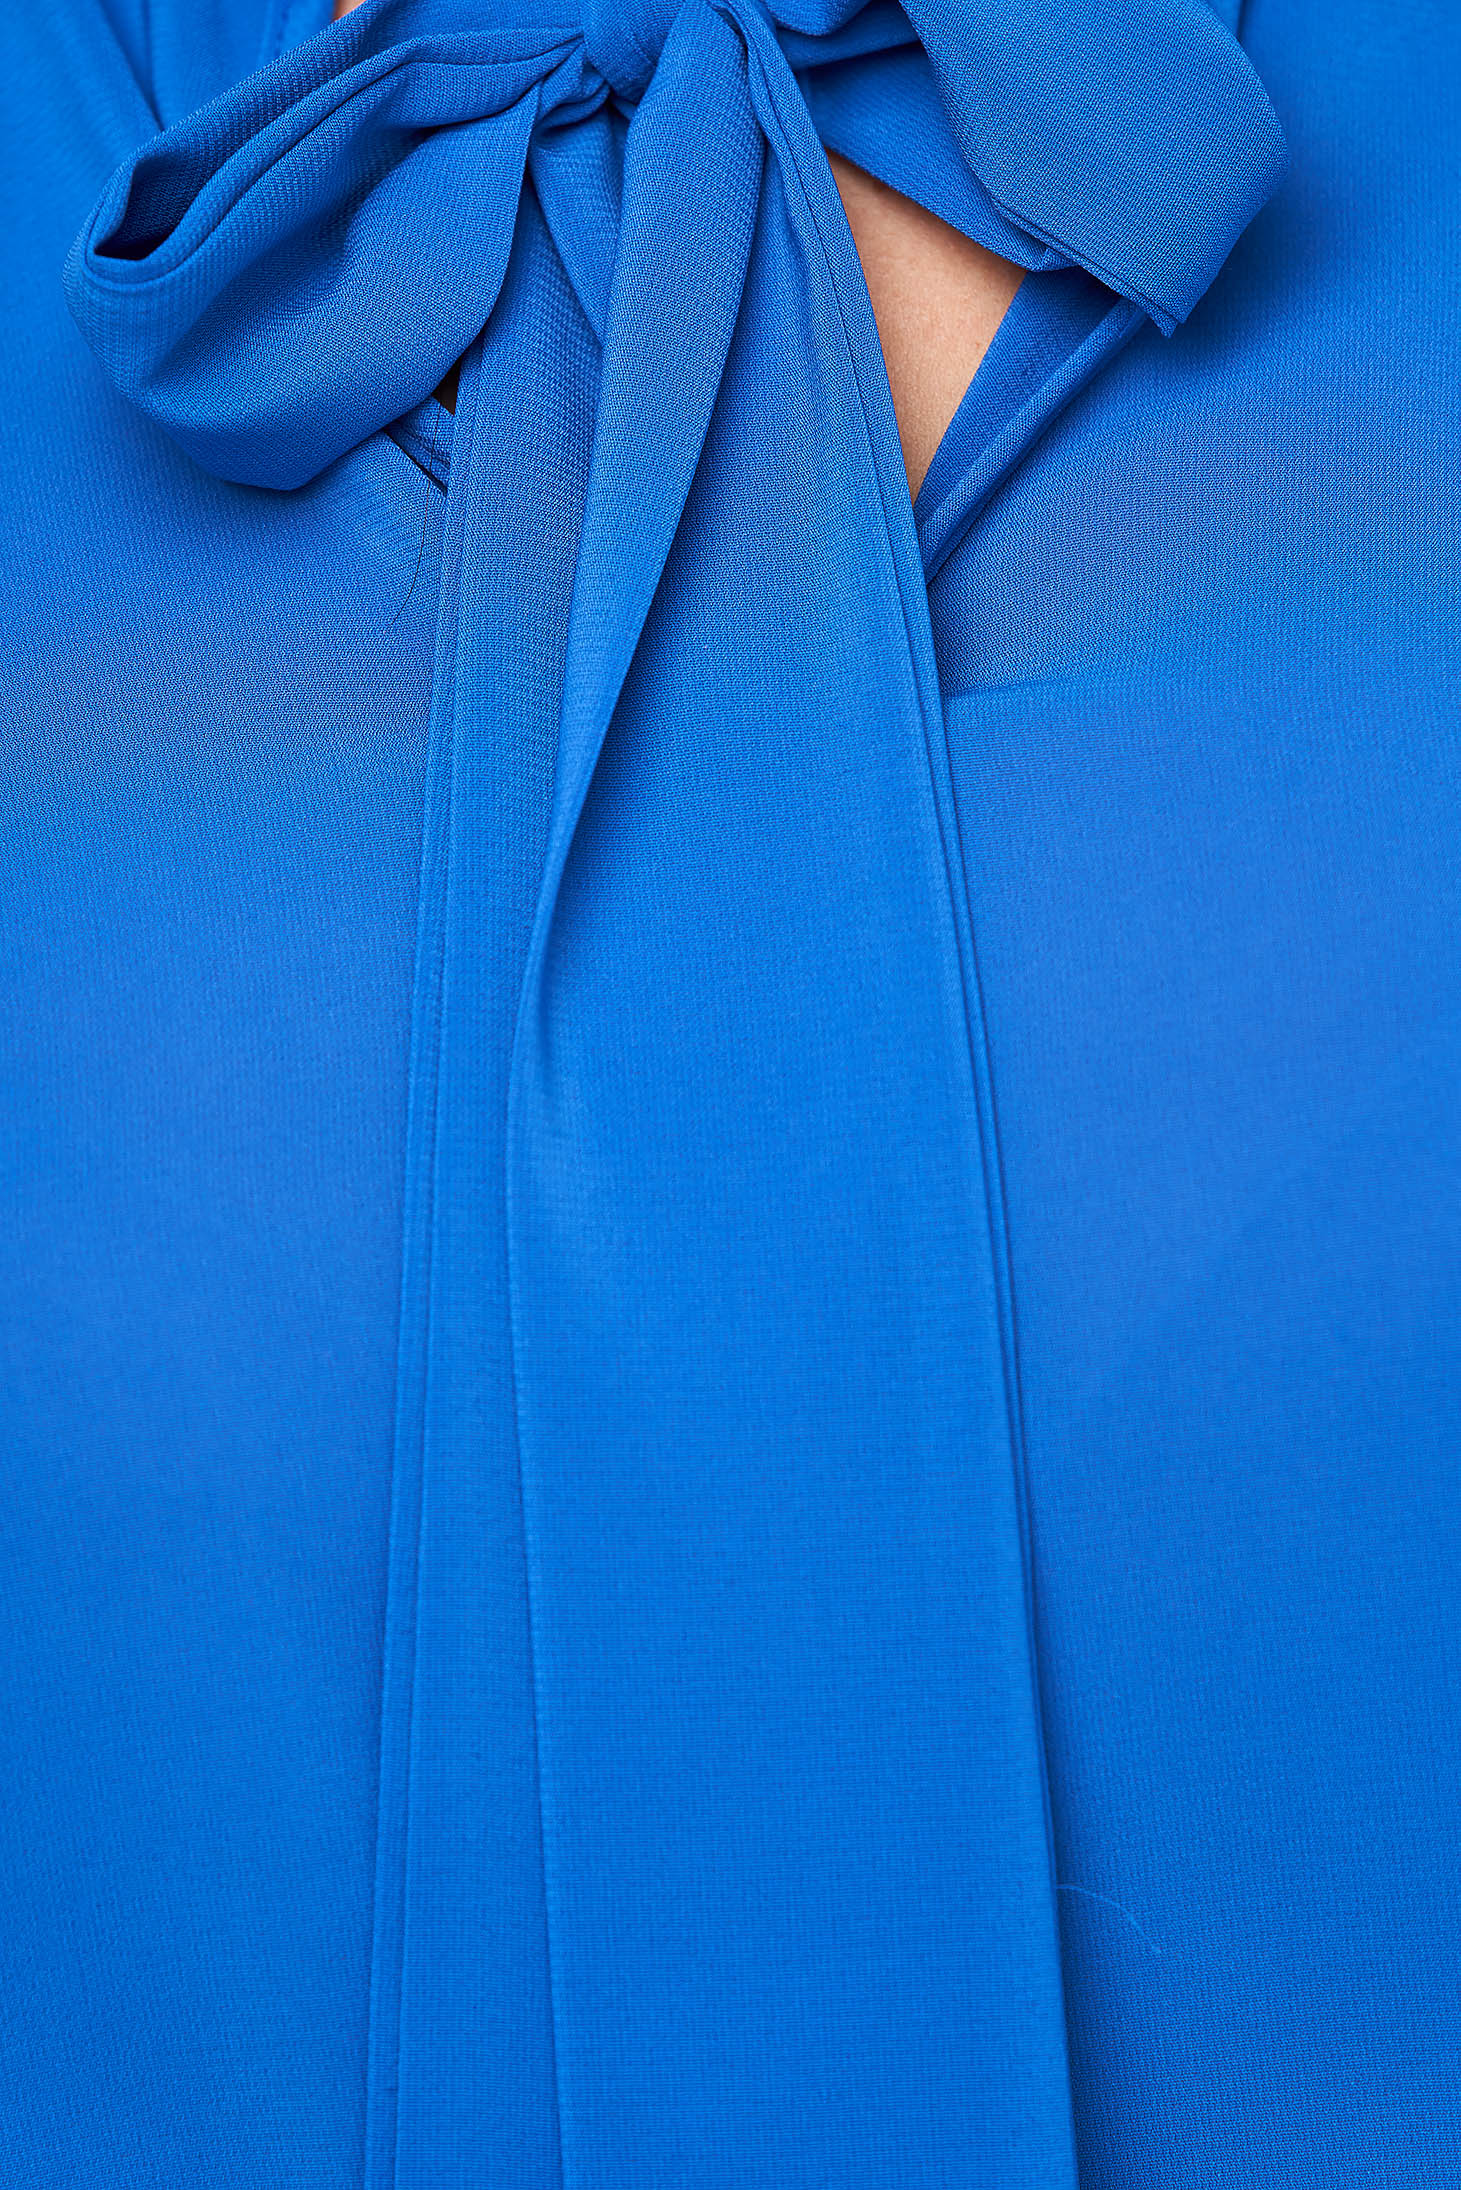 Kék bő szabású női blúz muszlinból kendő jellegű gallérral - StarShinerS 5 - StarShinerS.hu